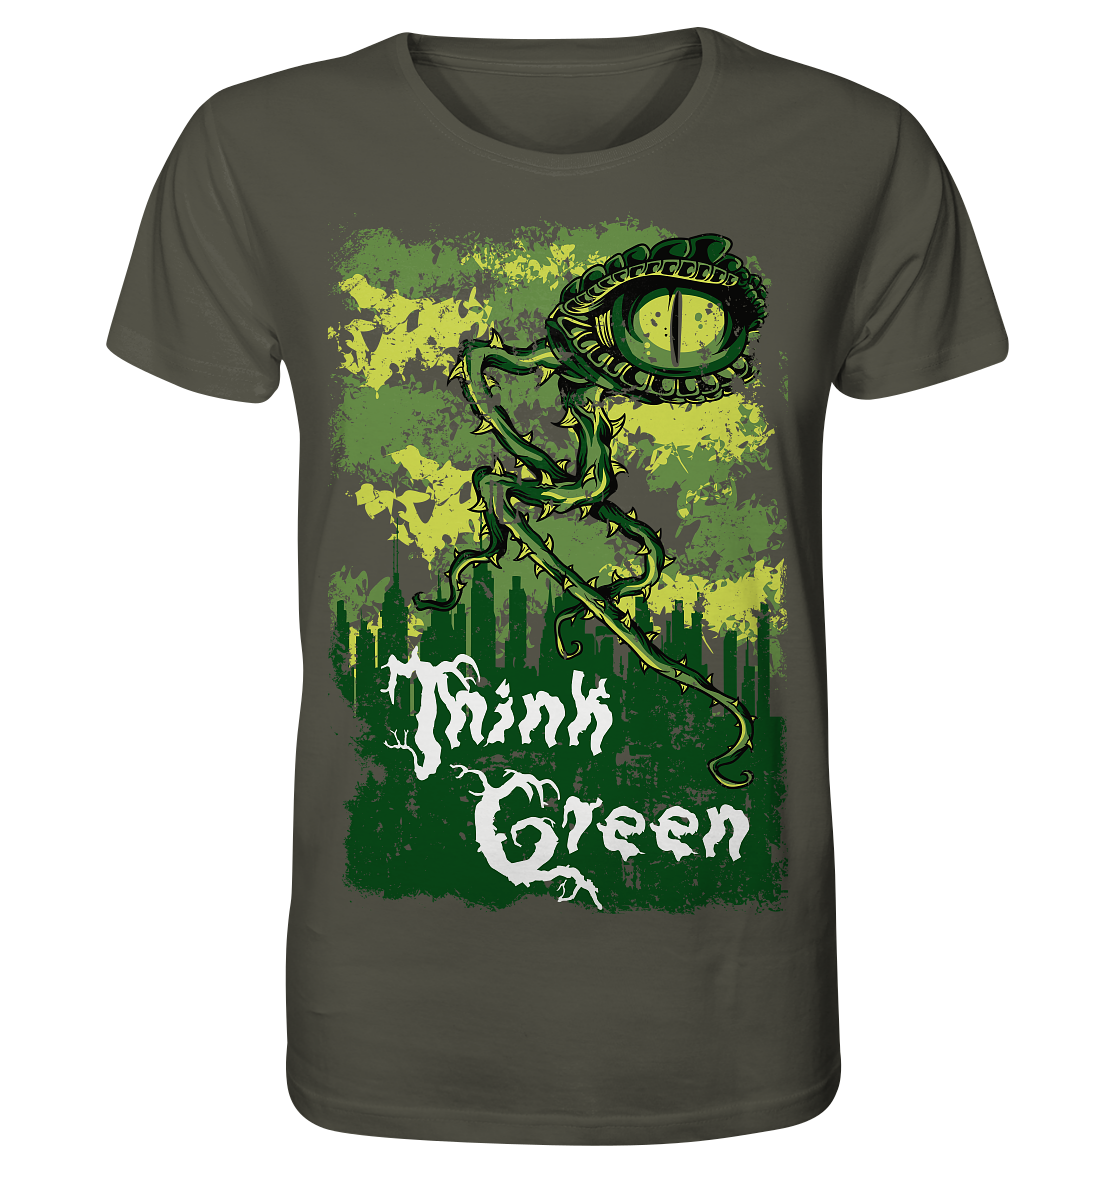 Think Green - Organic Shirt